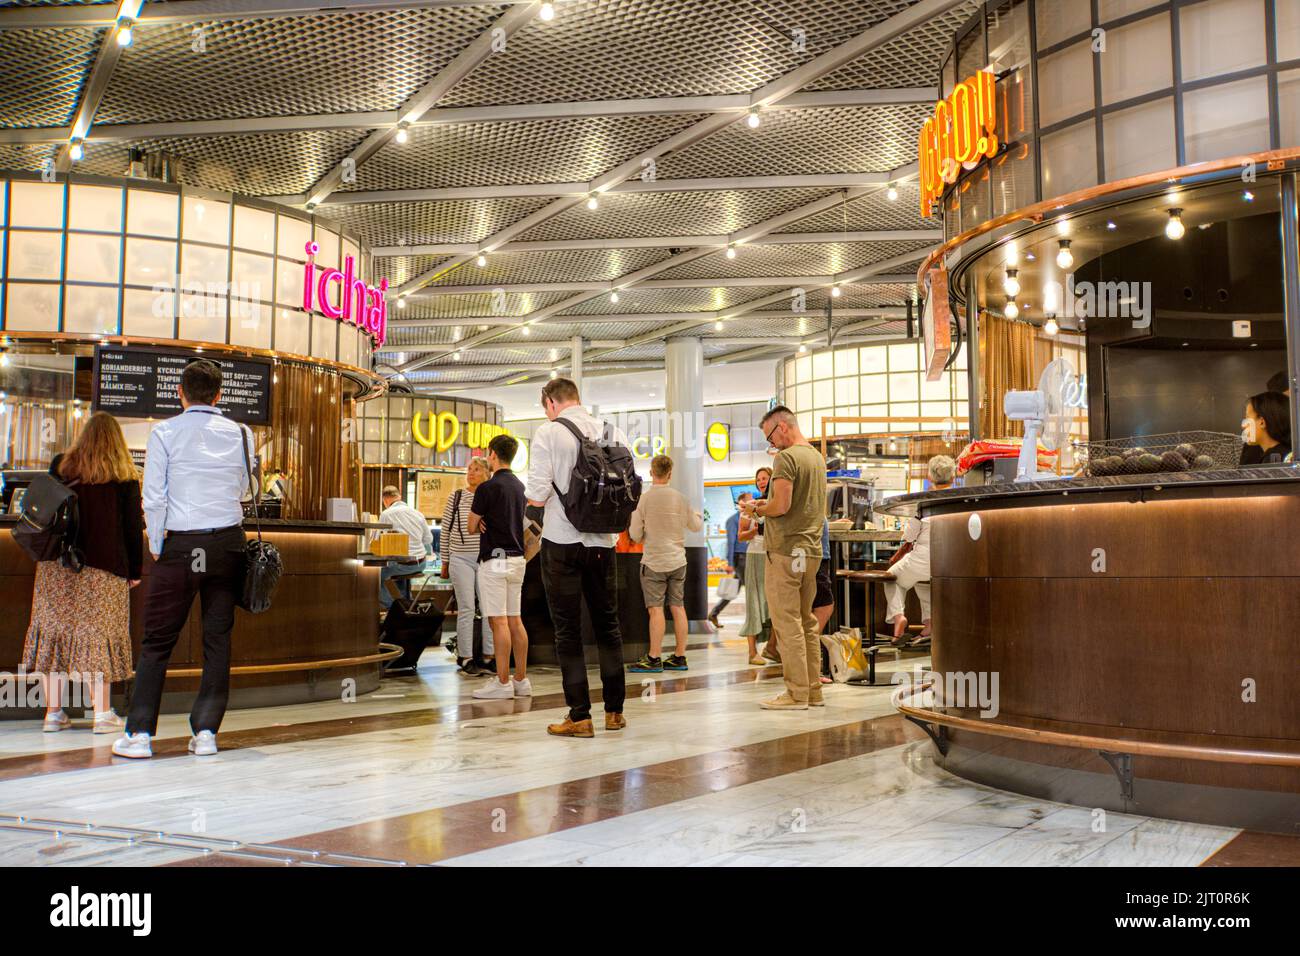 Food outlets at Stockholm Central Station, Sweden Stock Photo